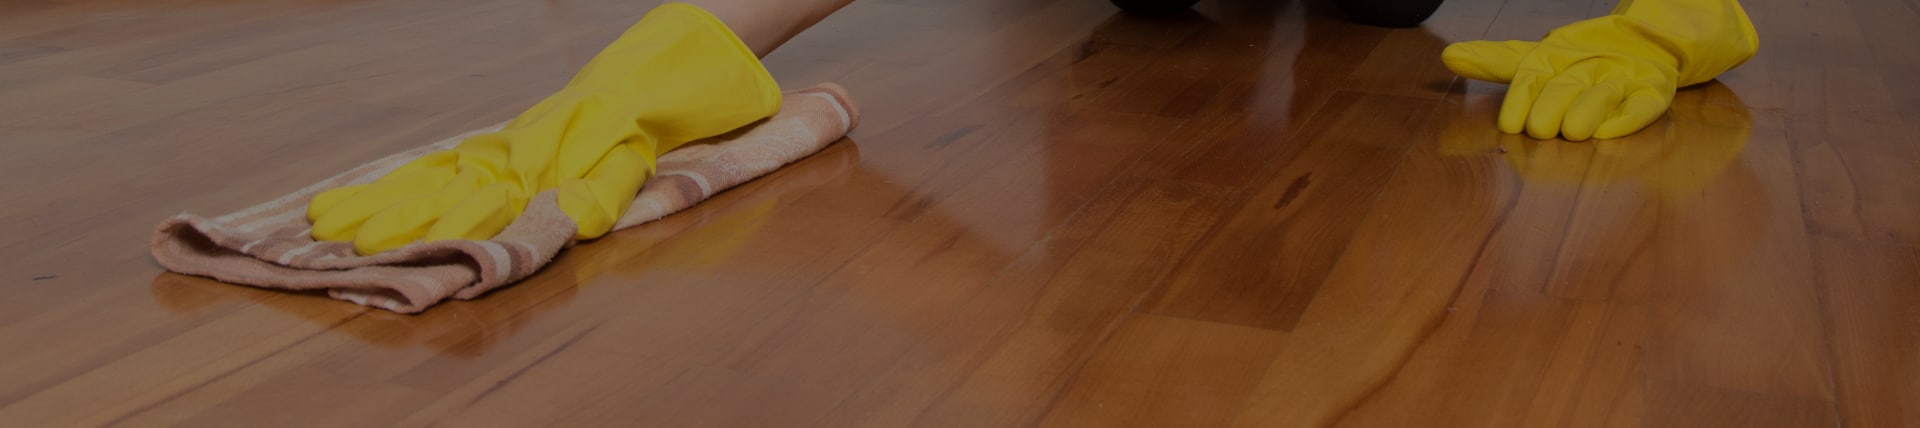 Pflege eines Holzbodens mit gelben Handschuhen und Putztuch